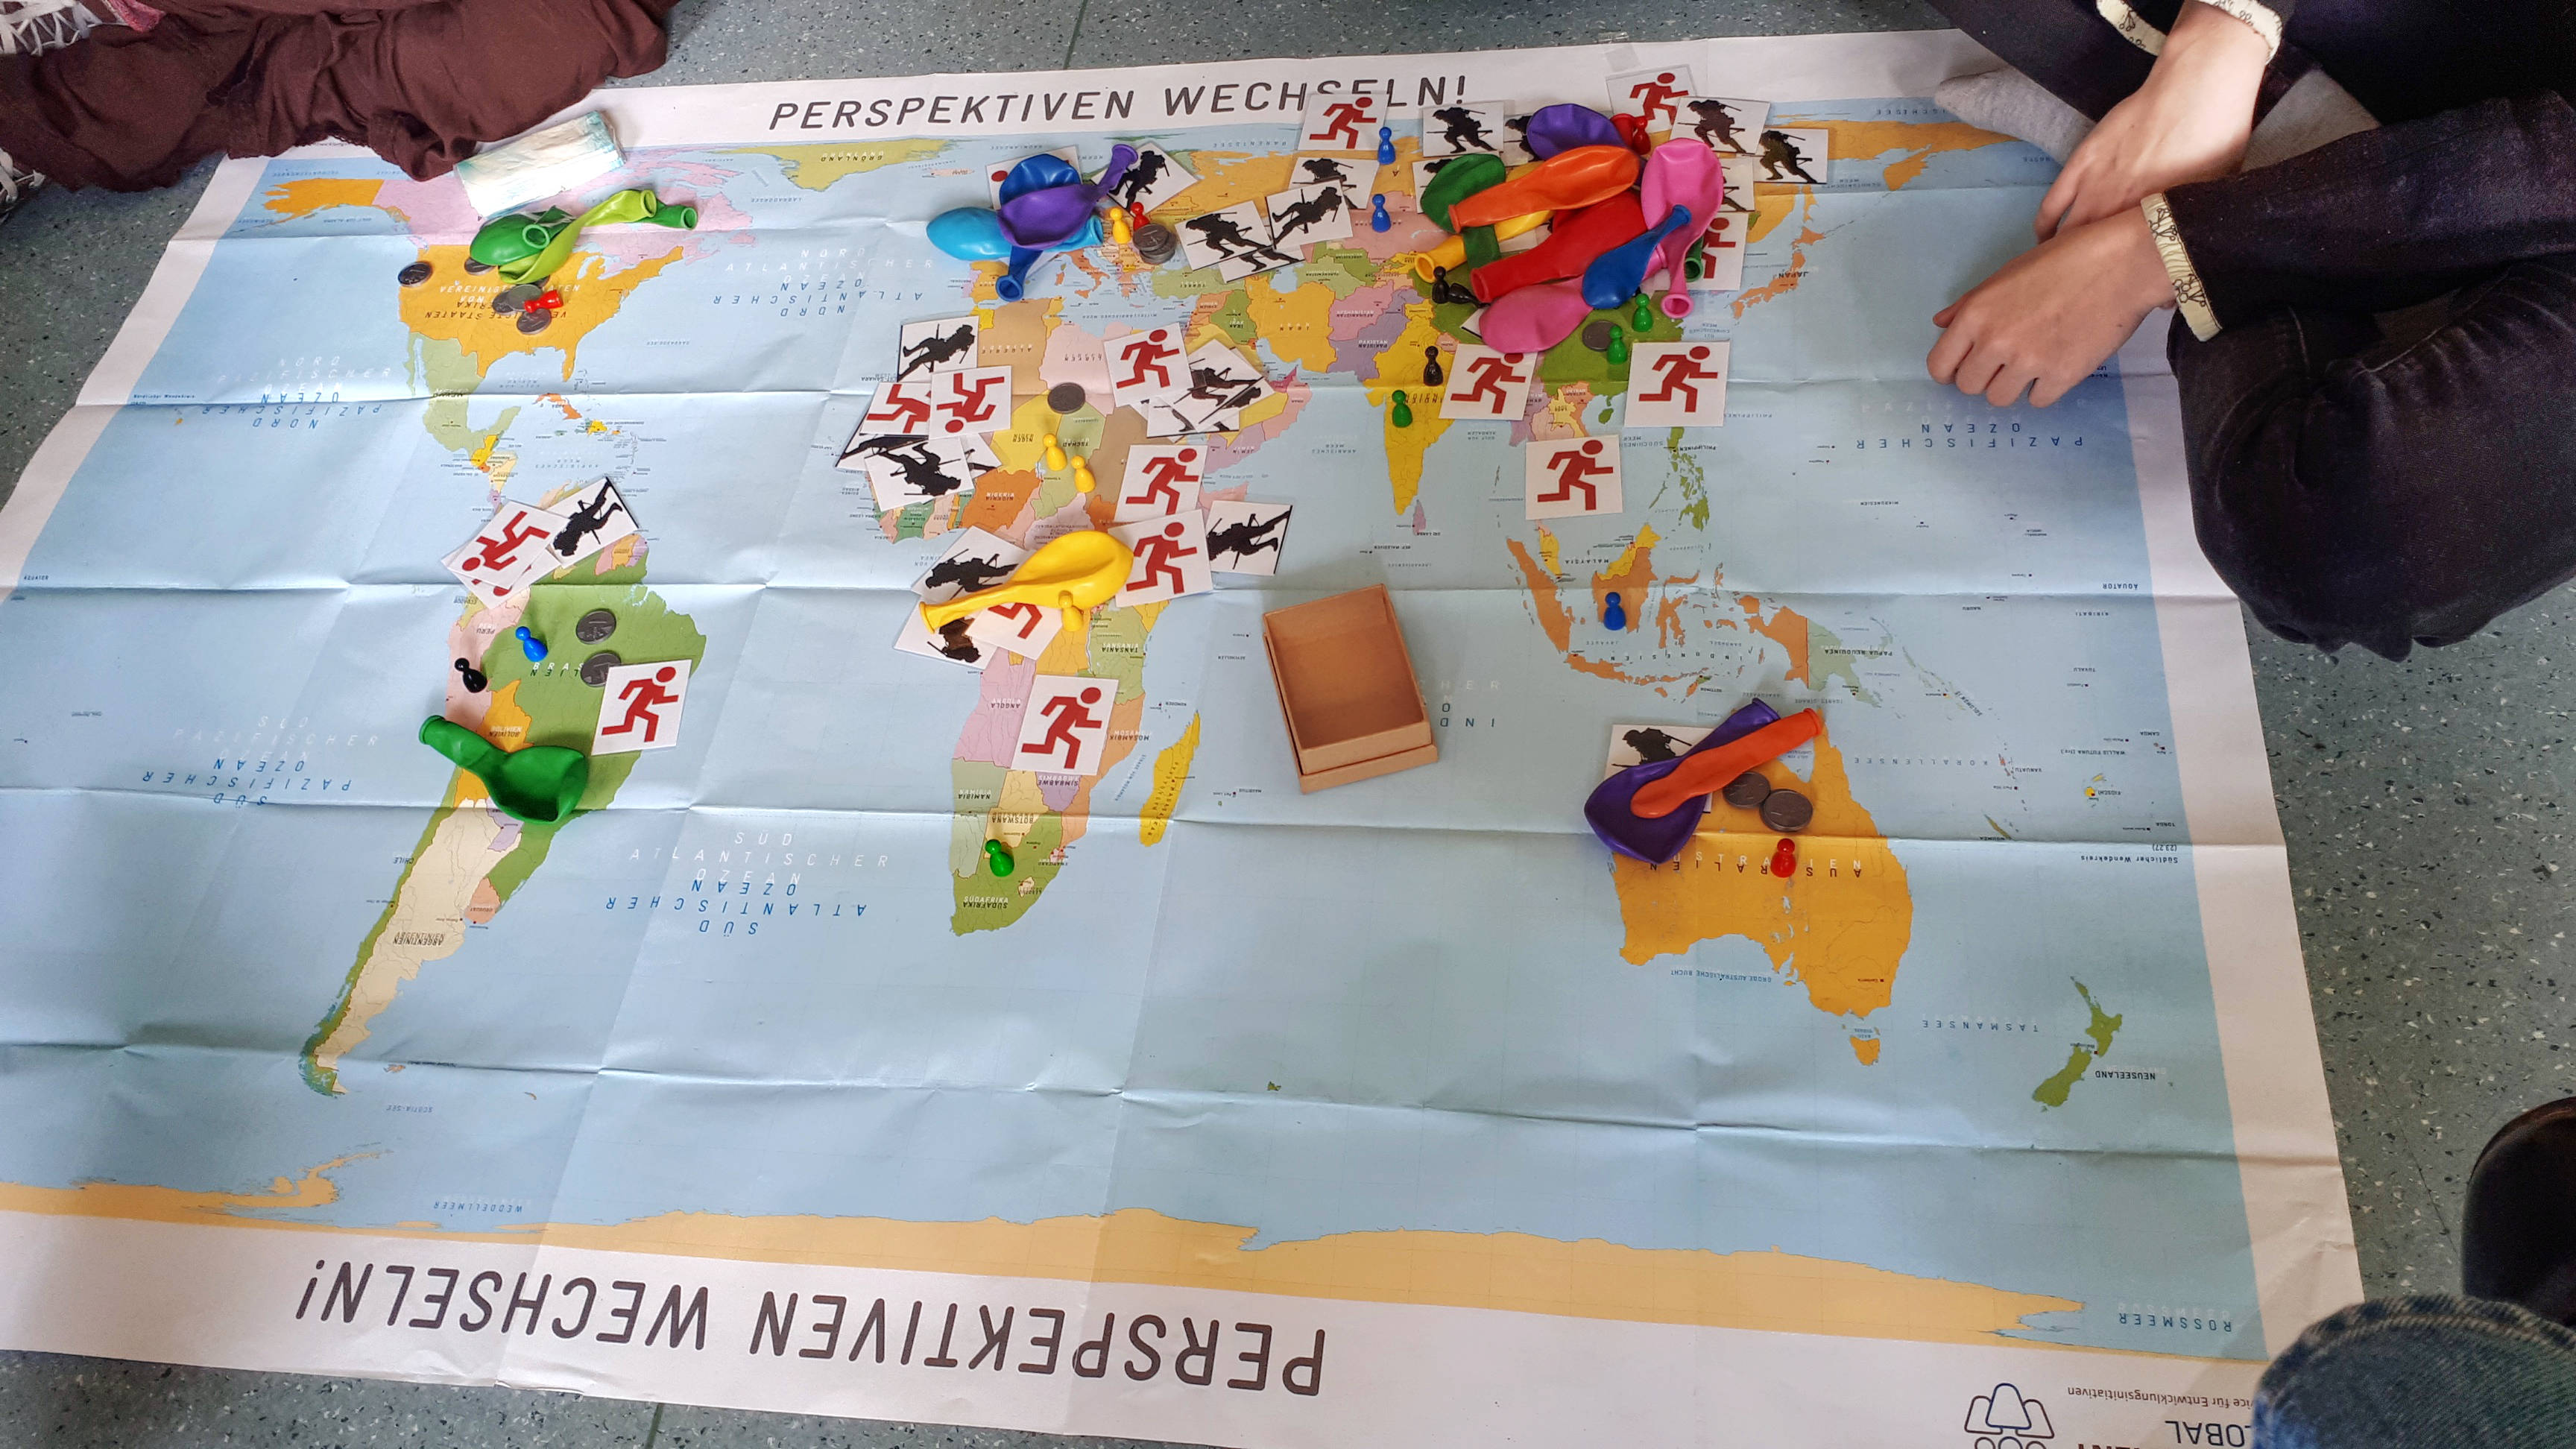 Zentral im Bild liegt eine Weltkarte auf dem Boden, auf der unterschiedliche Dinge auf den einzelnen Kontinenten liegen. Es sind Luftballons, Abbildungen von Soldaten und Geldmünzen zu sehen.